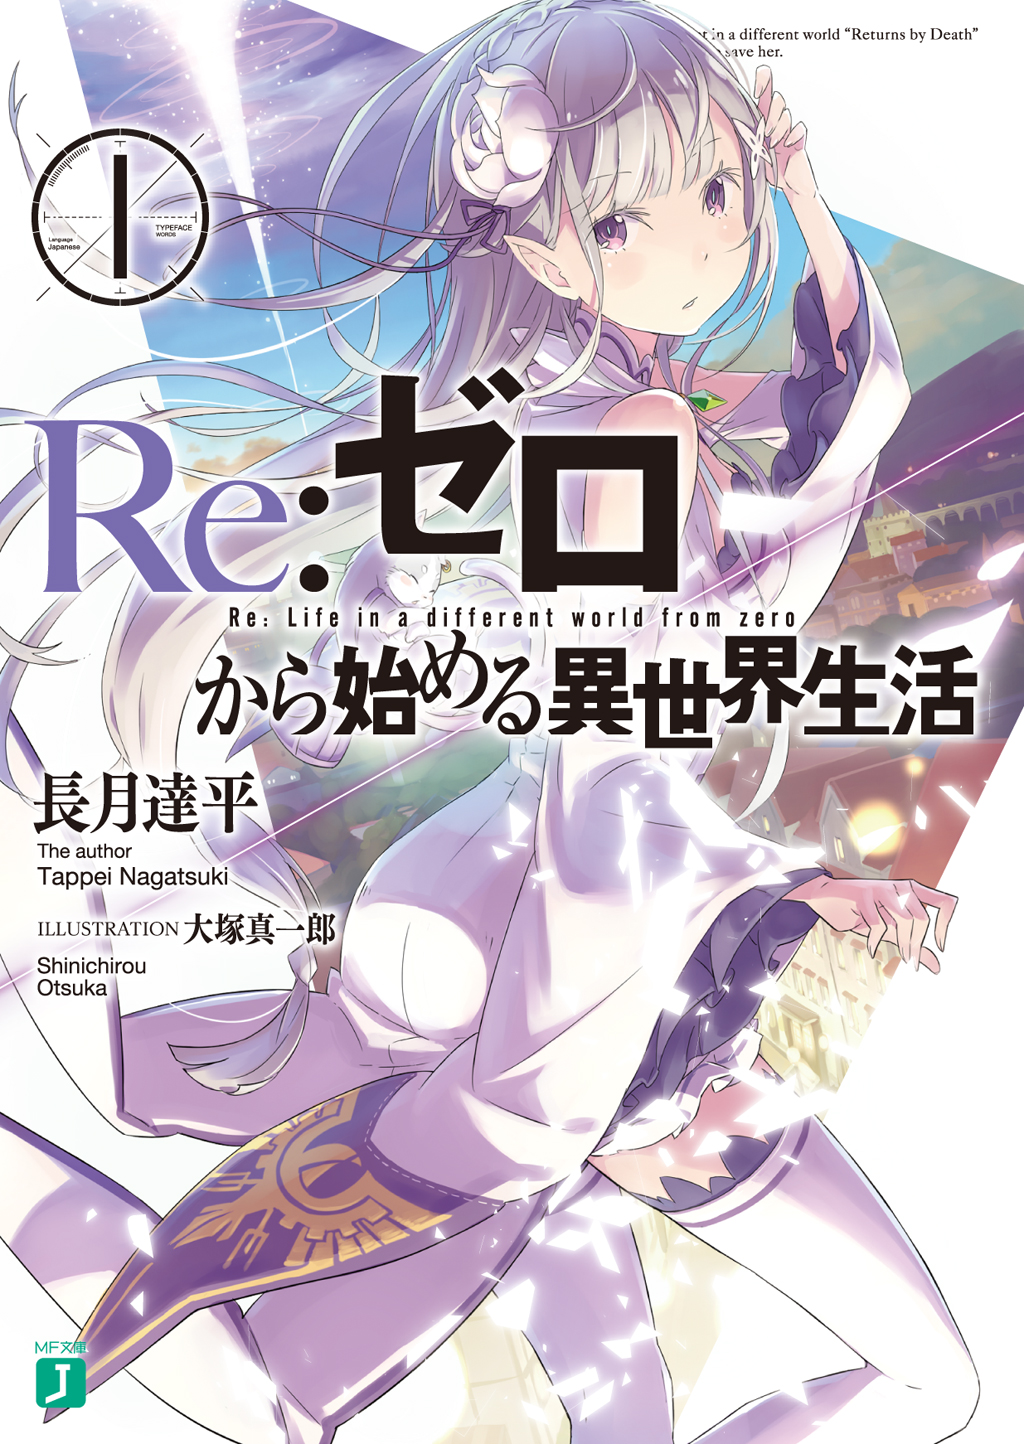 Re:Zero Light Novel Volume 1, Re:Zero Wiki